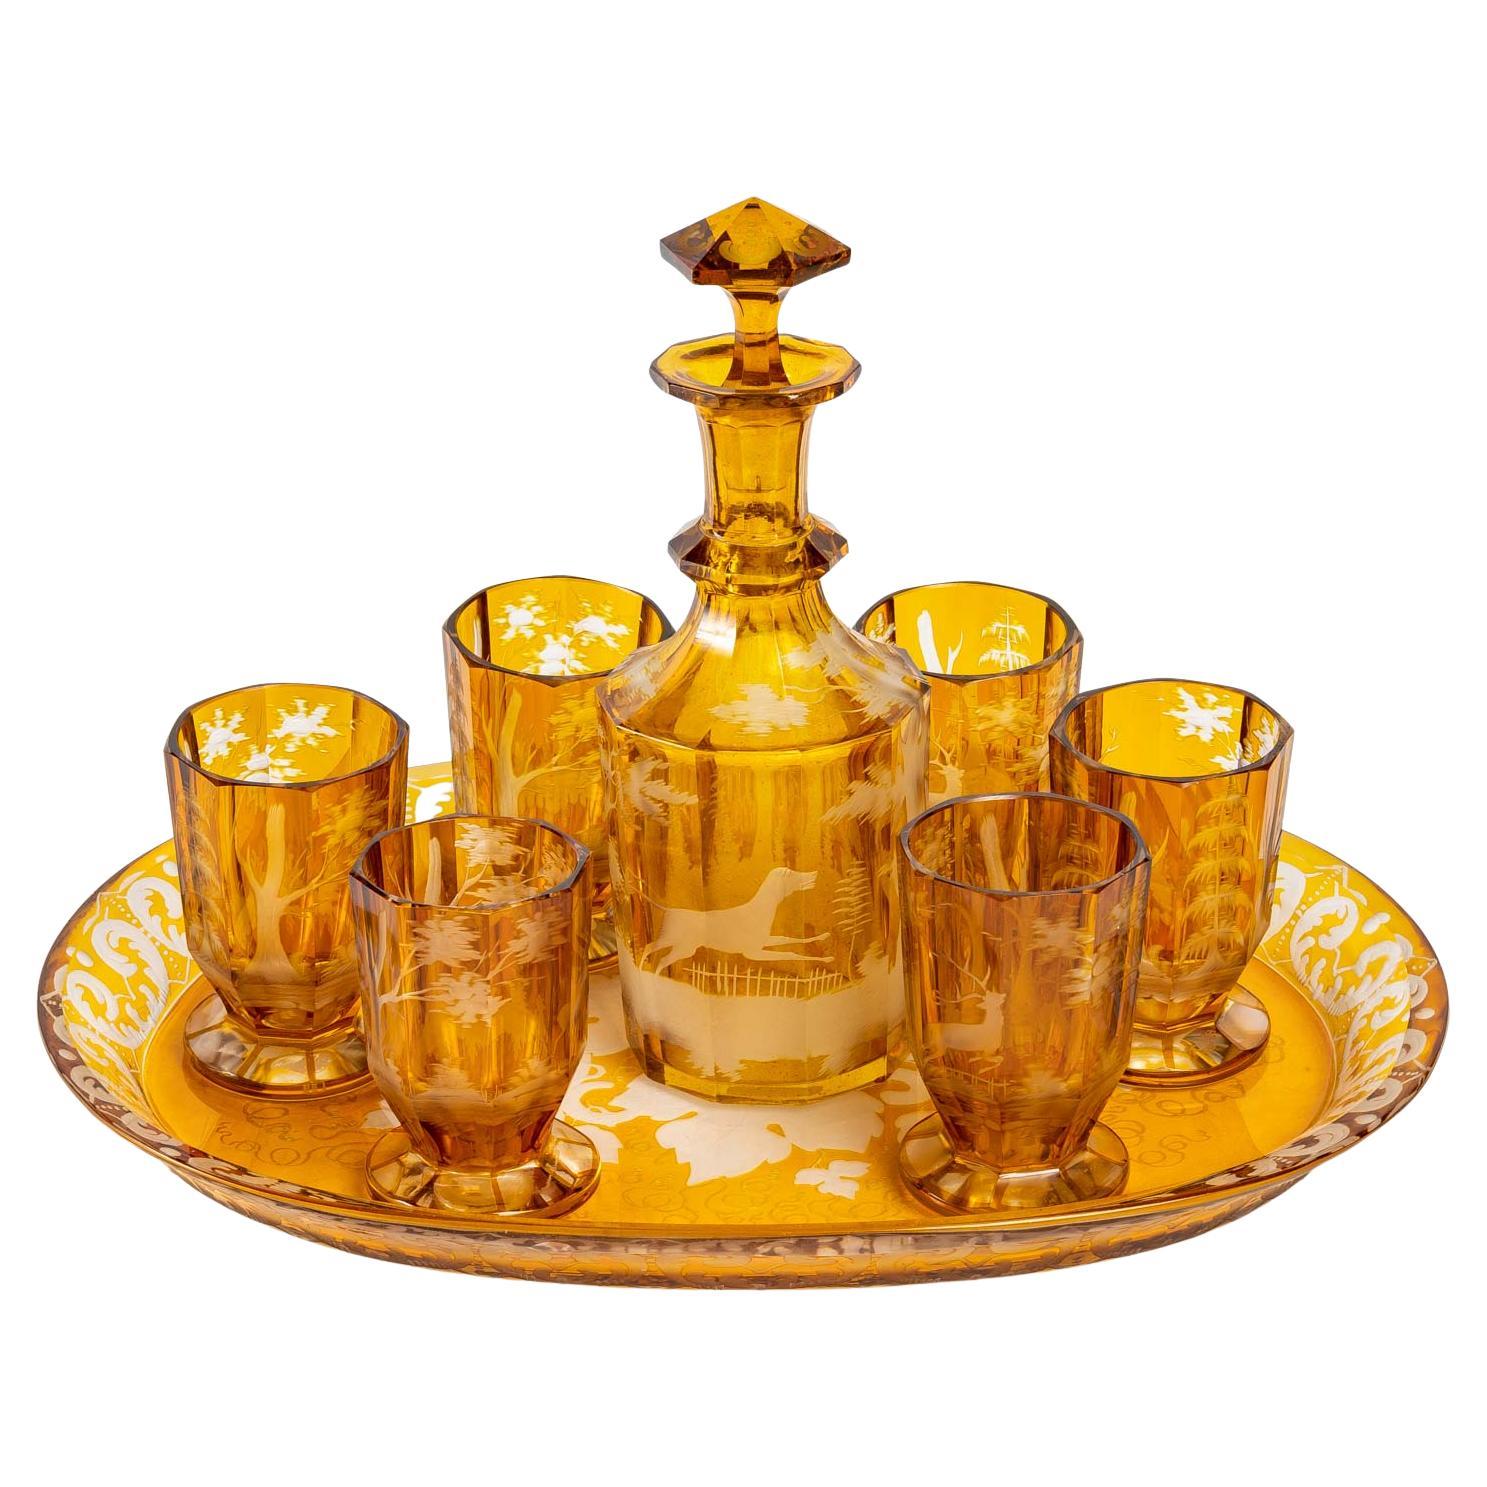 Service de table en cristal jaune de Bohème, XIXe siècle